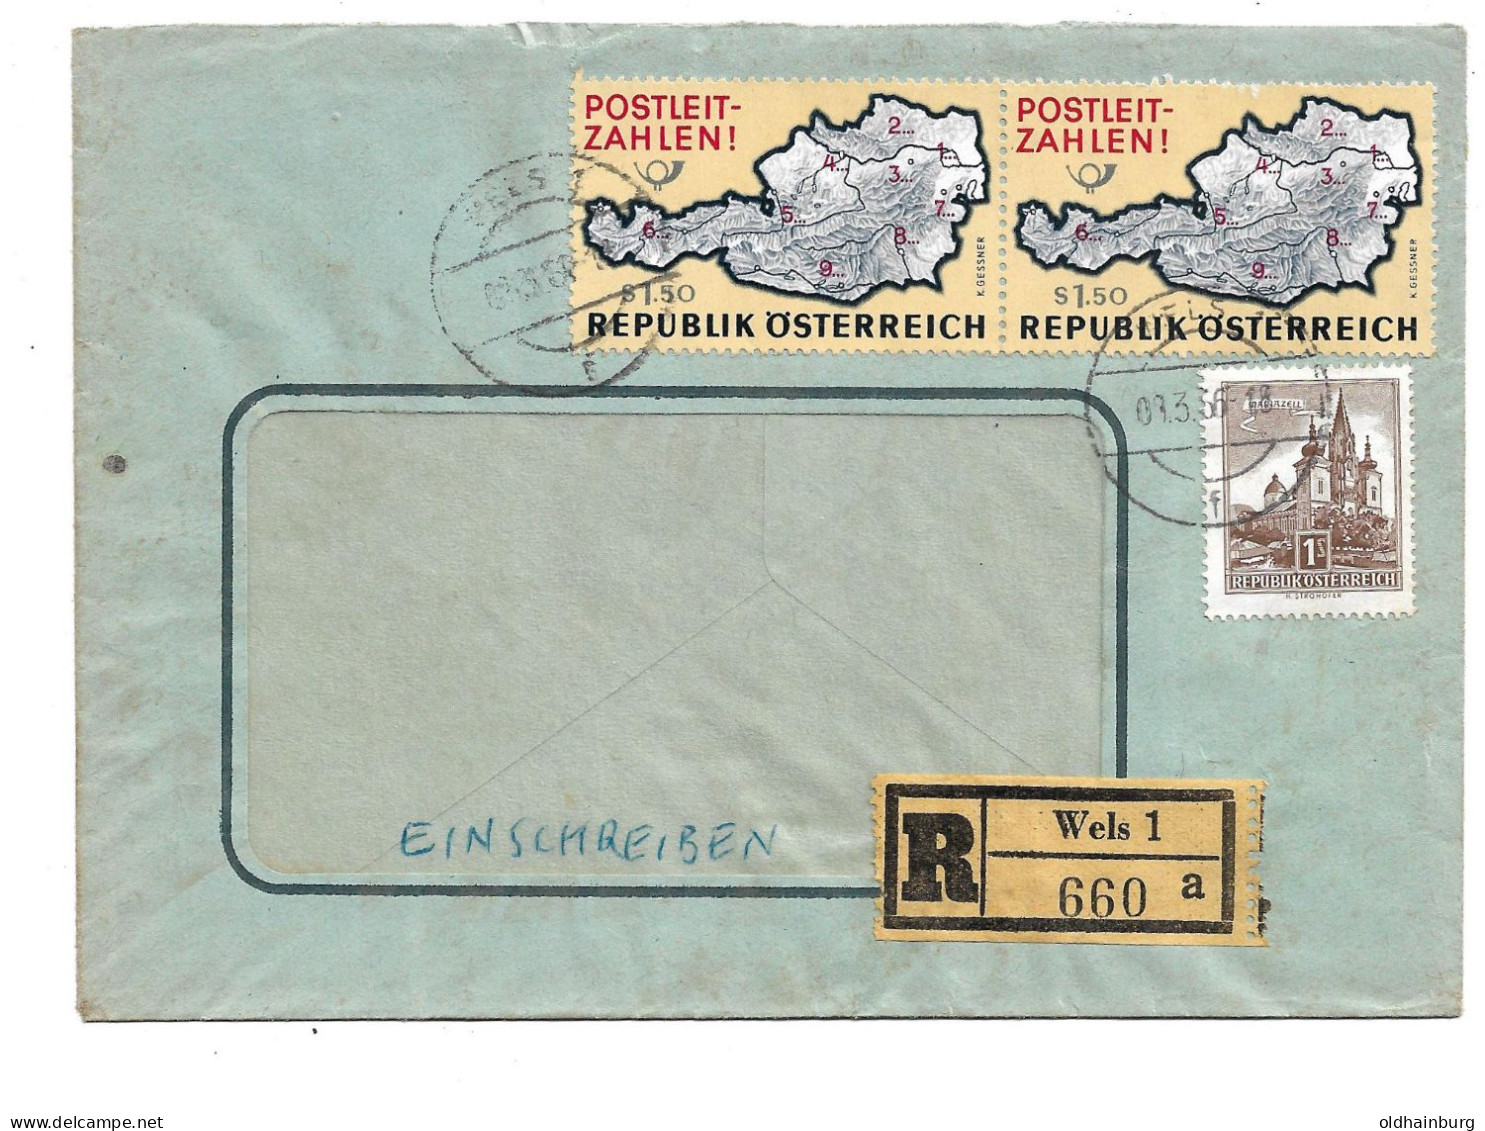 0415n: Österreich 1966, Postleitzahlen- Marke Auf Rekobrief Wels 1 - Code Postal